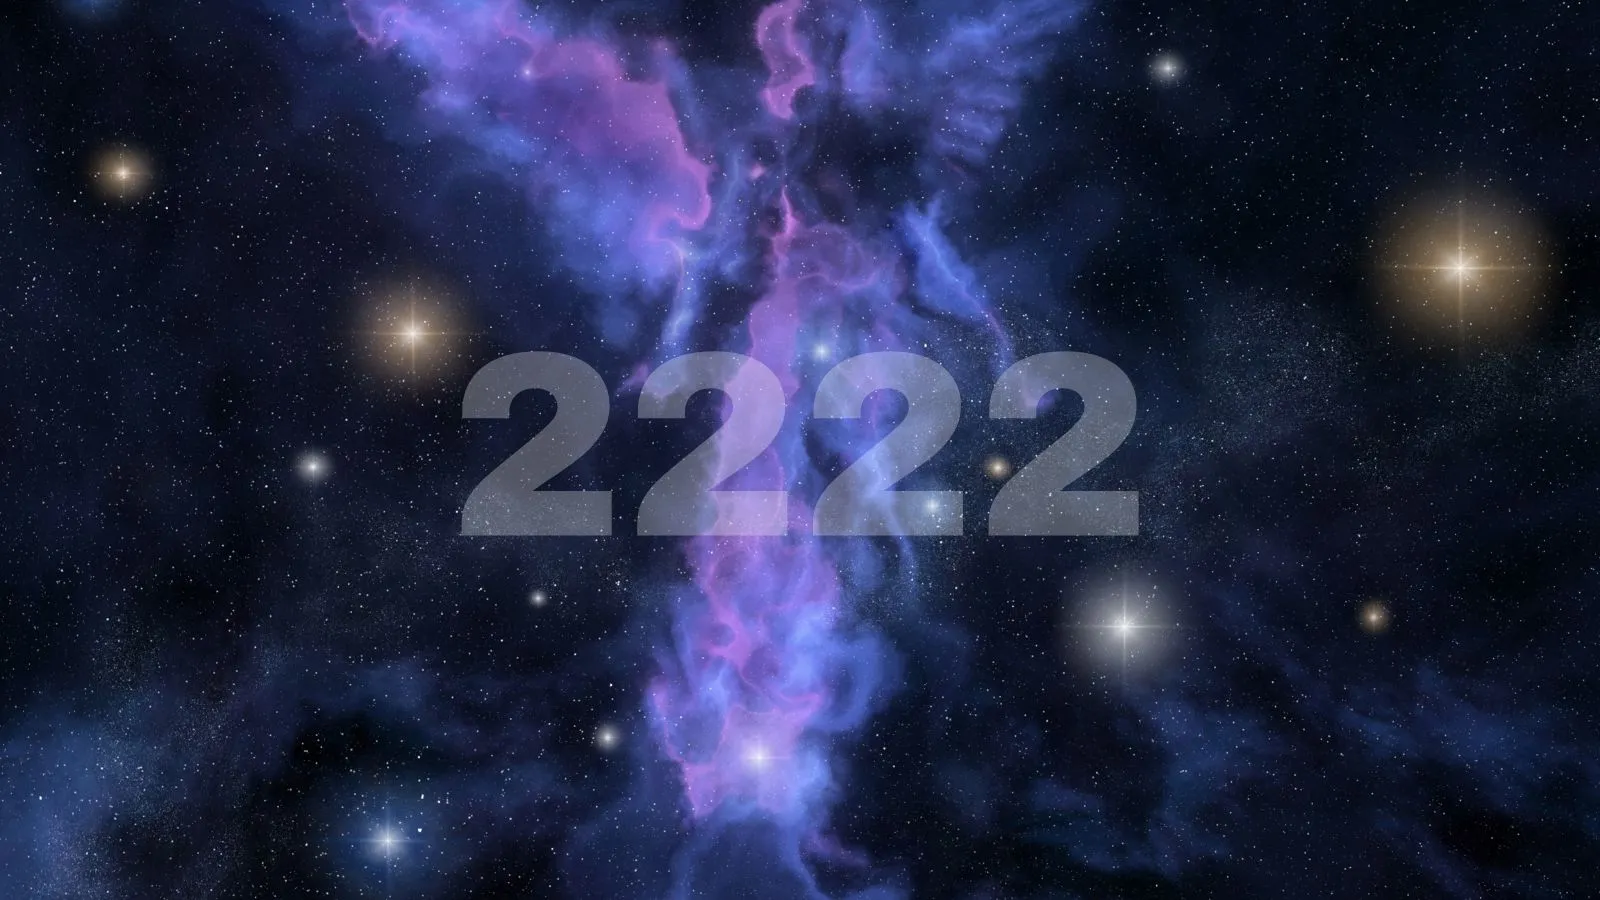 2222 angel number